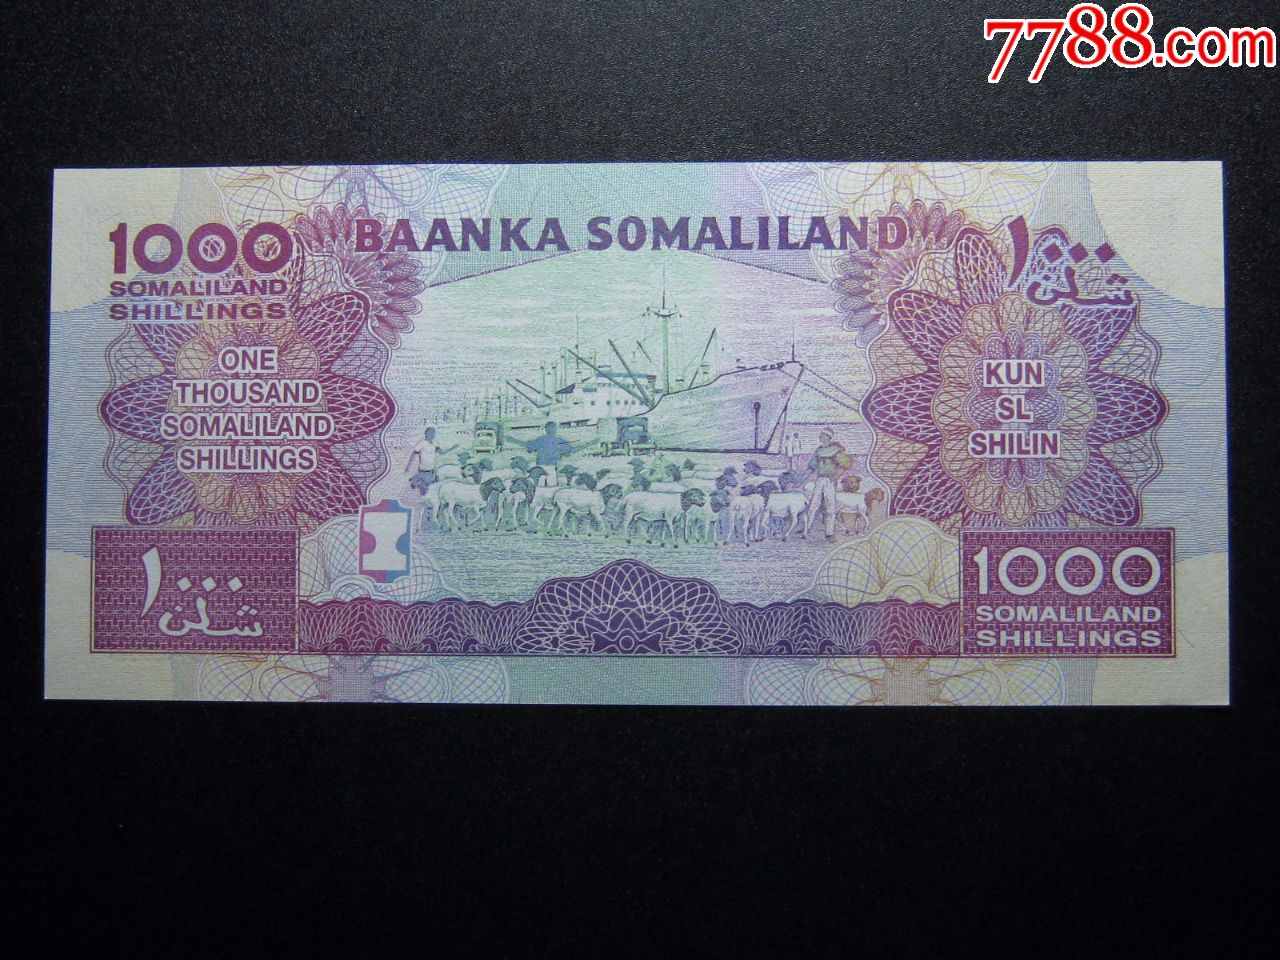 索马里货币图片